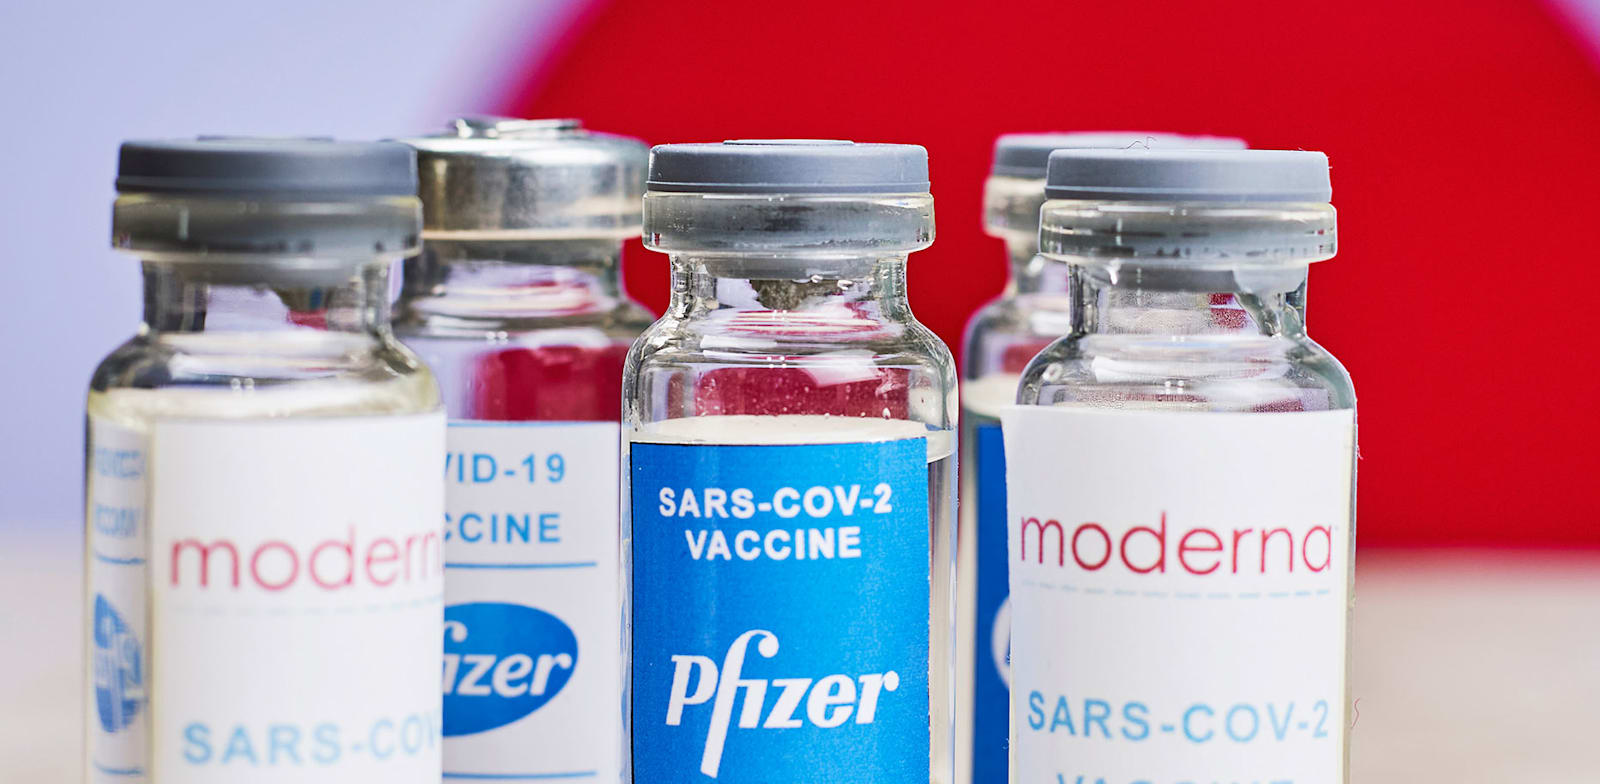 חיסונים לקורונה של מודרנה ופייזר / צילום: Shutterstock